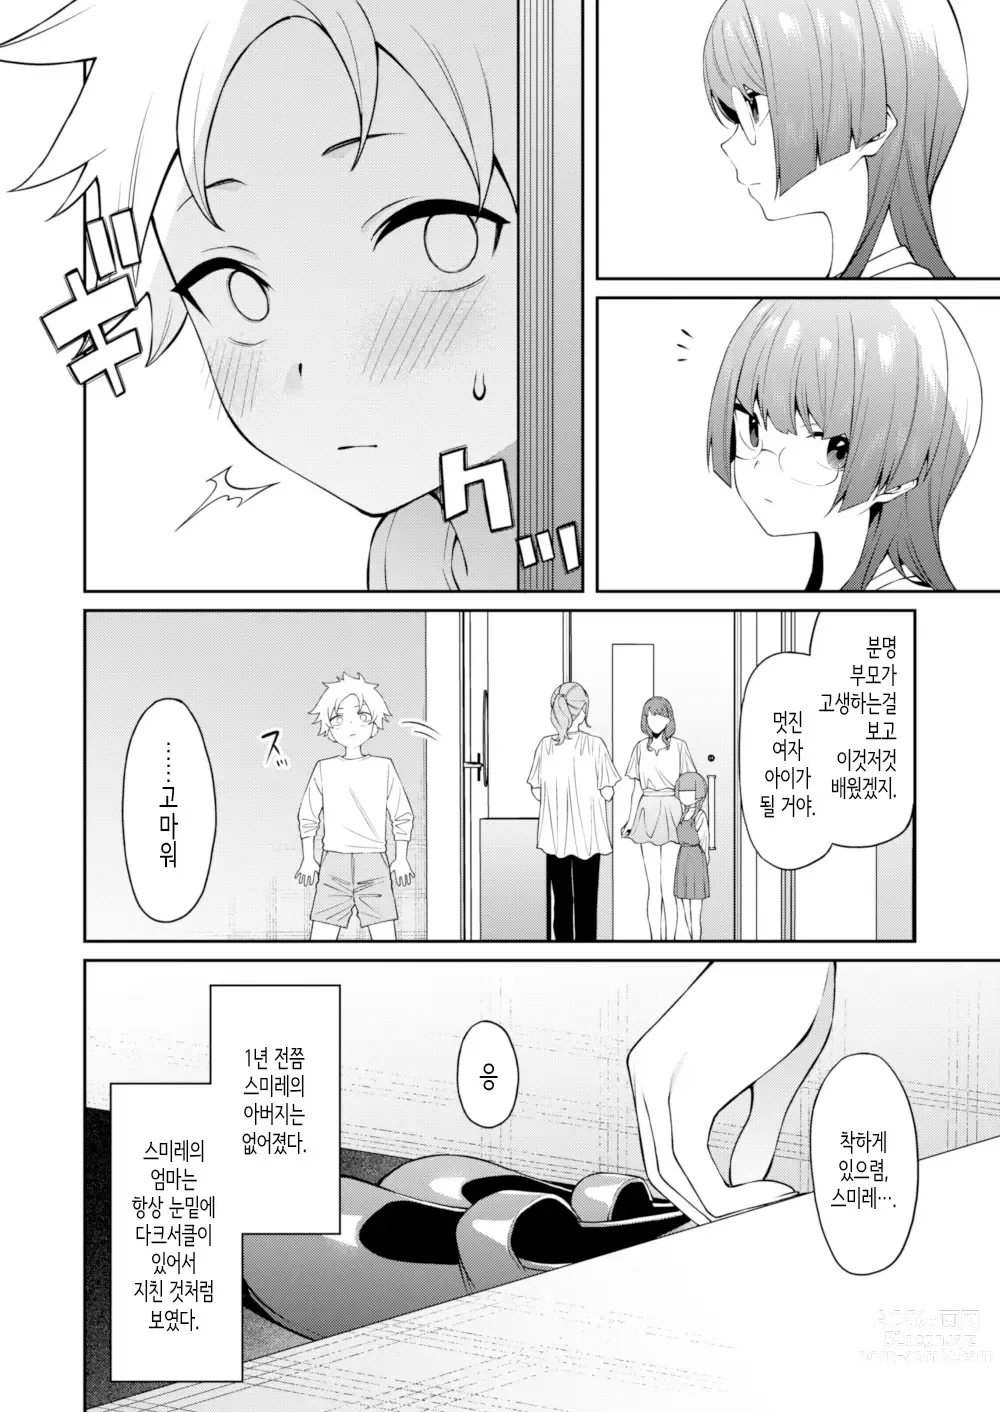 Page 11 of doujinshi 스미레 쨩은 머리가 좋다.